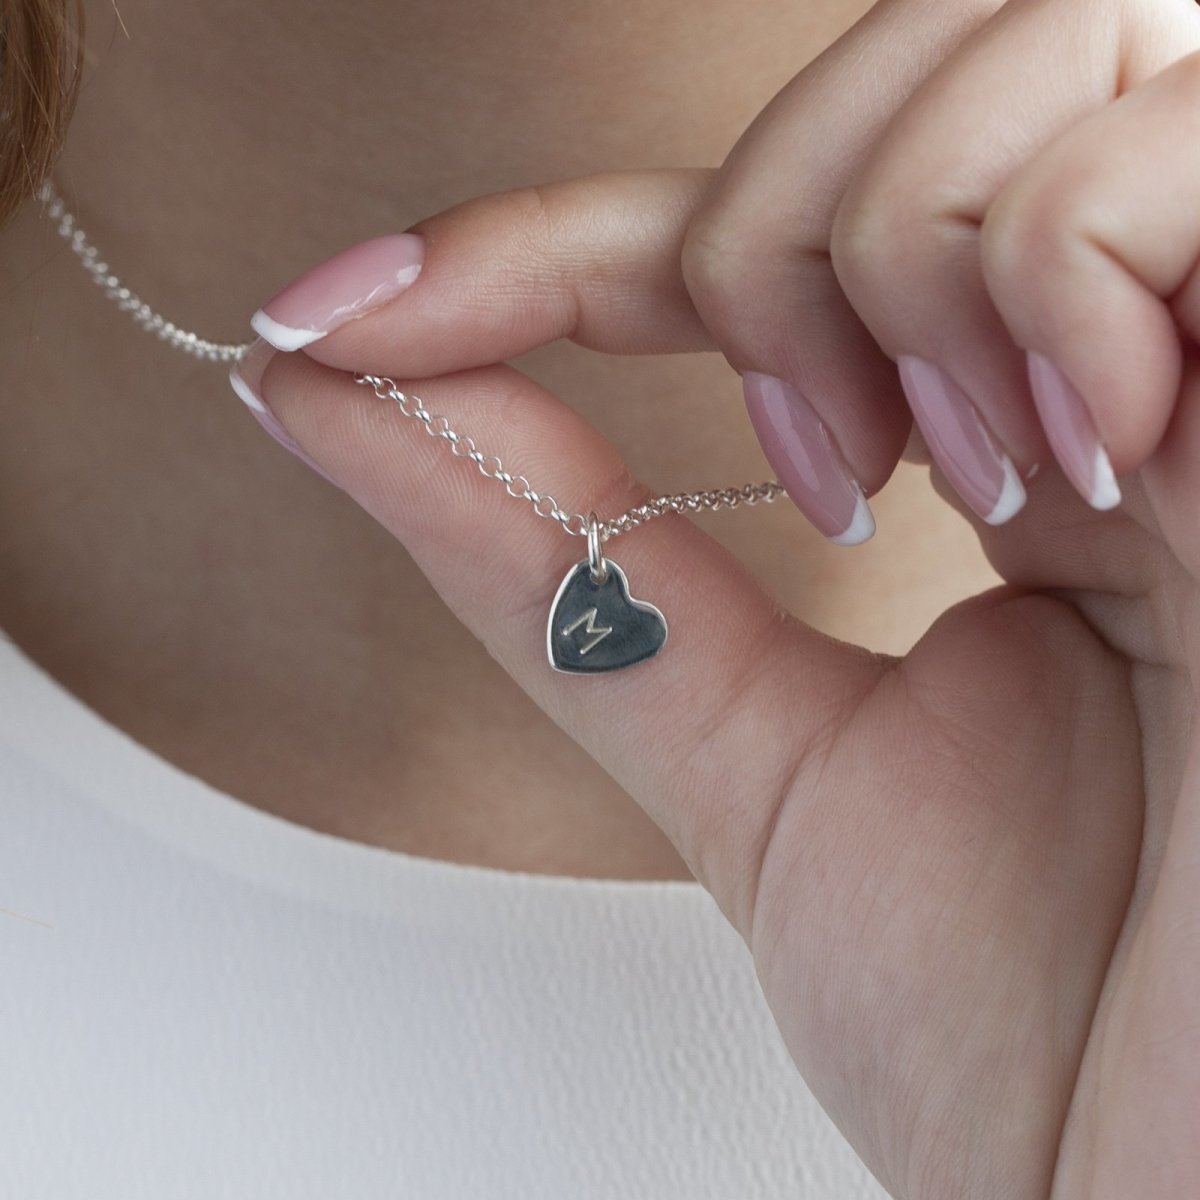 The Dainty Heart Neckpiece - Silver